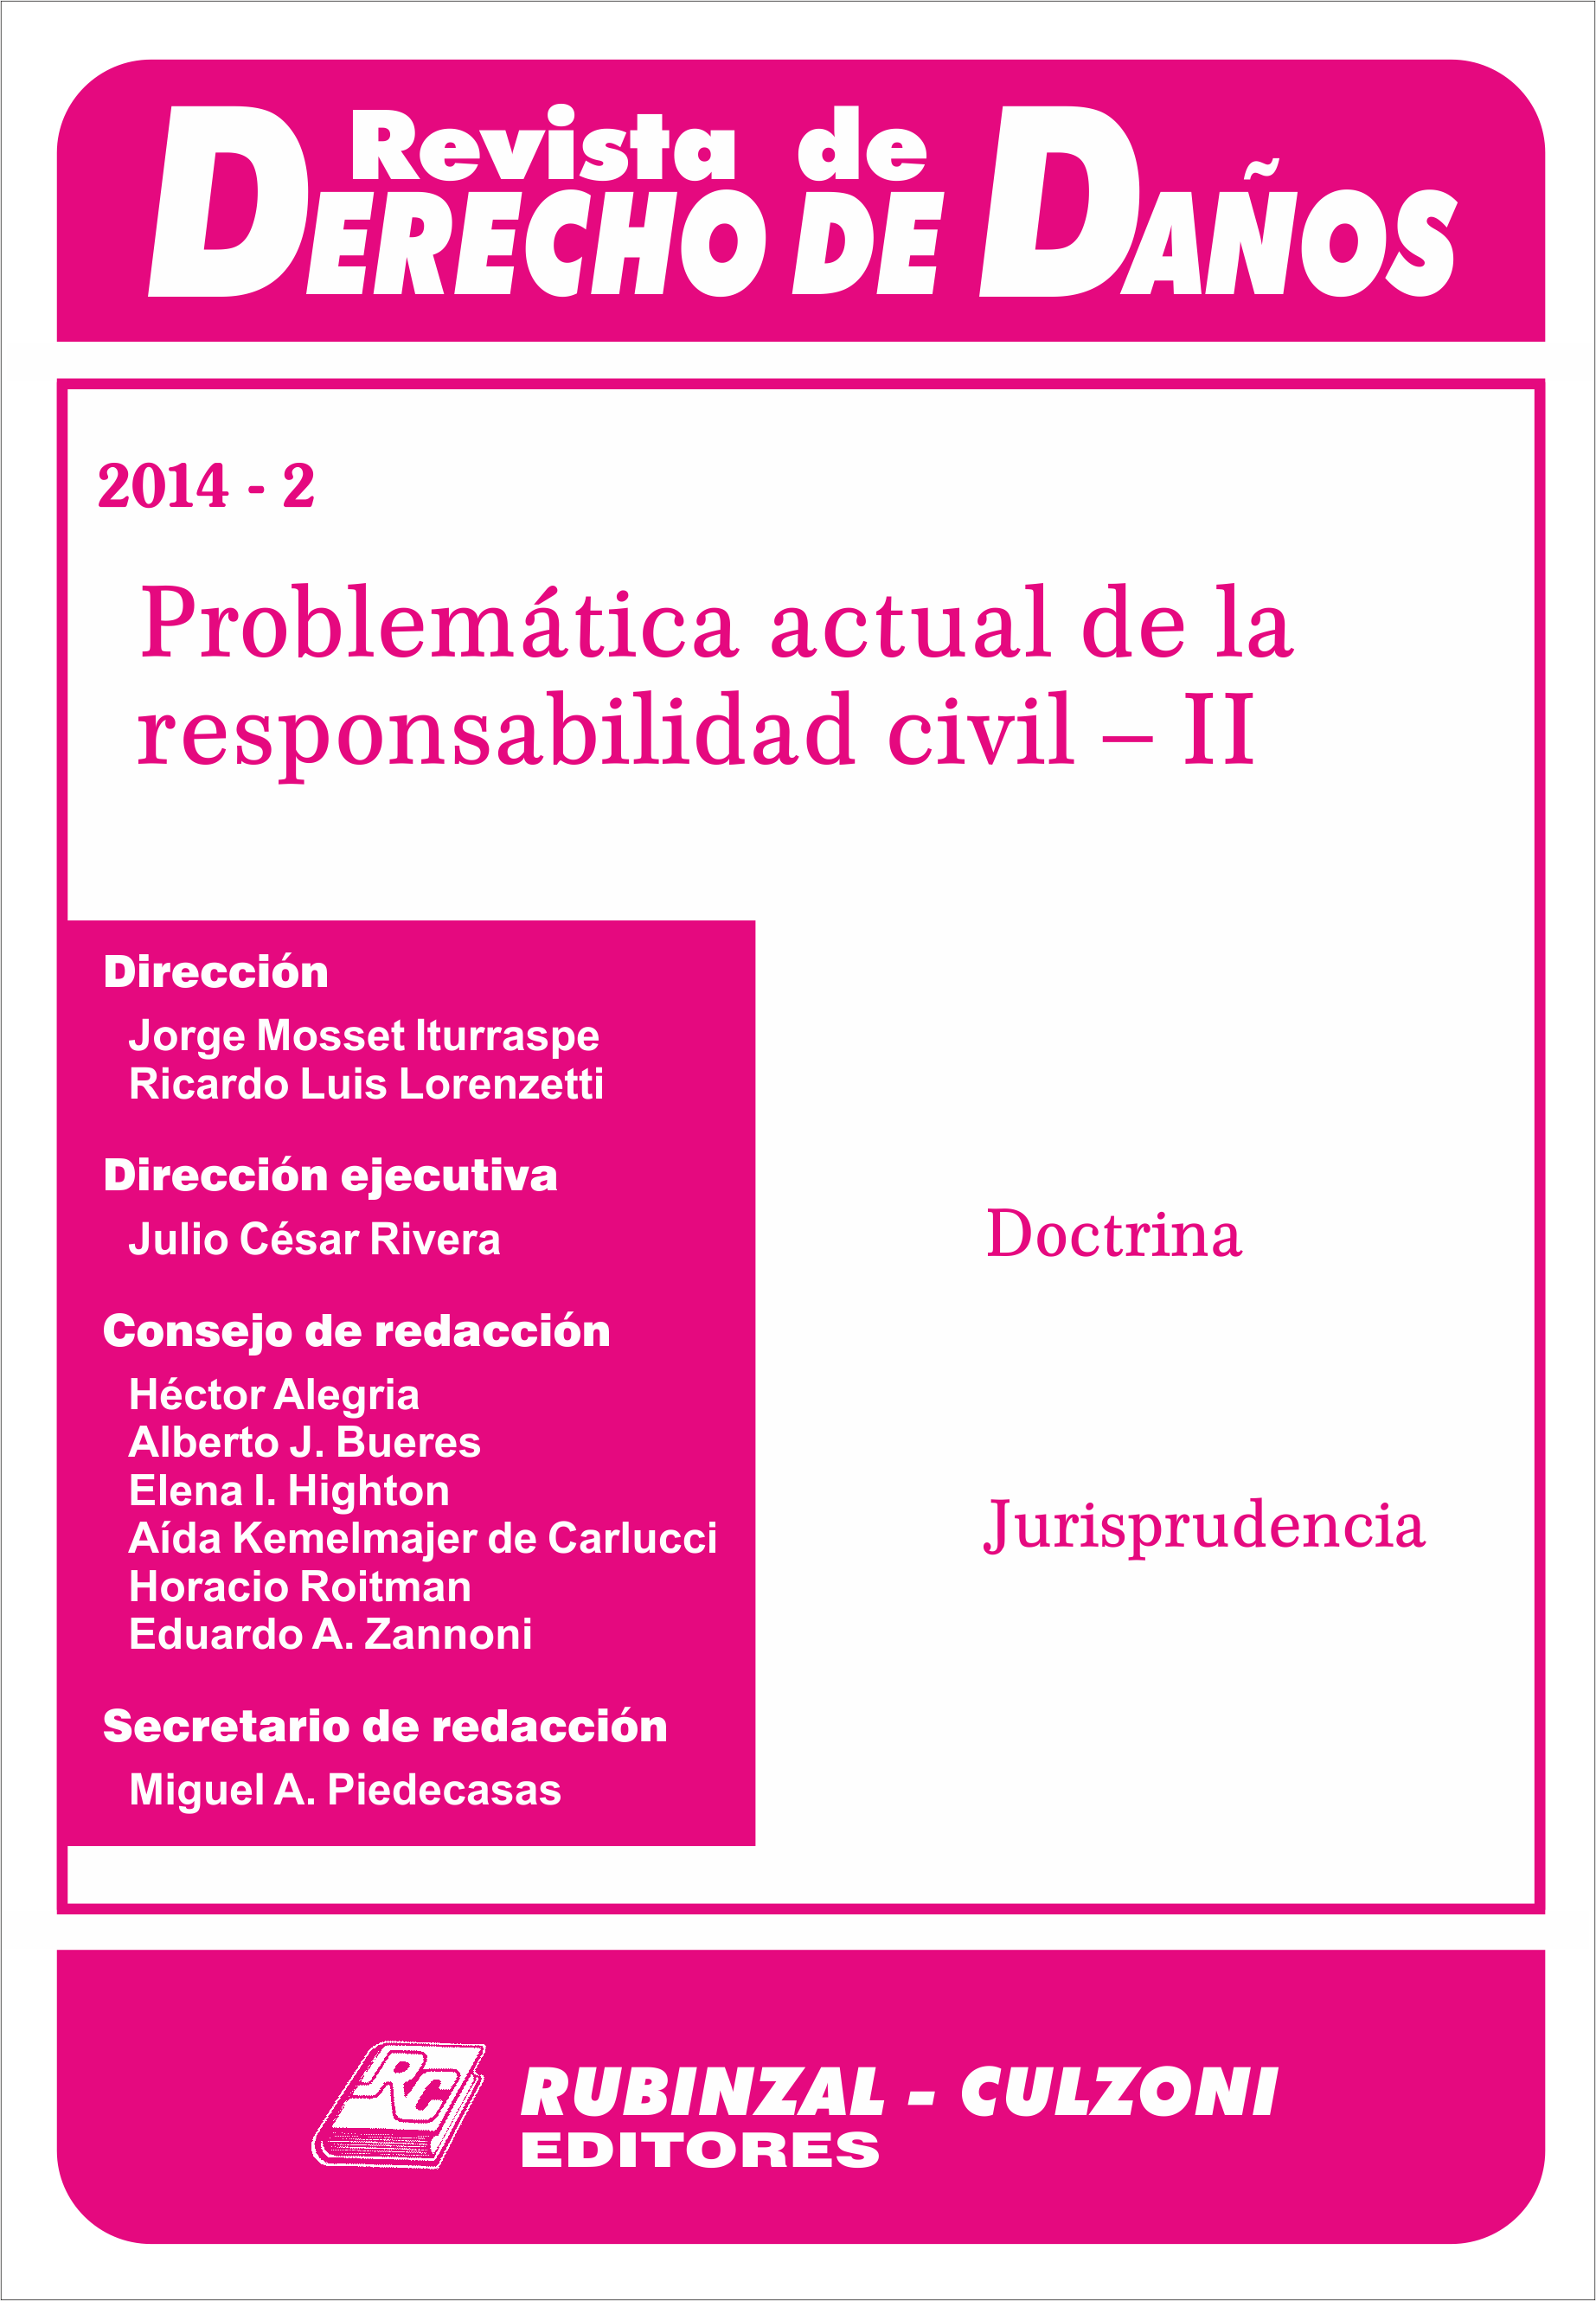 Revista de Derecho de Daños - Problemática actual de la responsabilidad civil - II